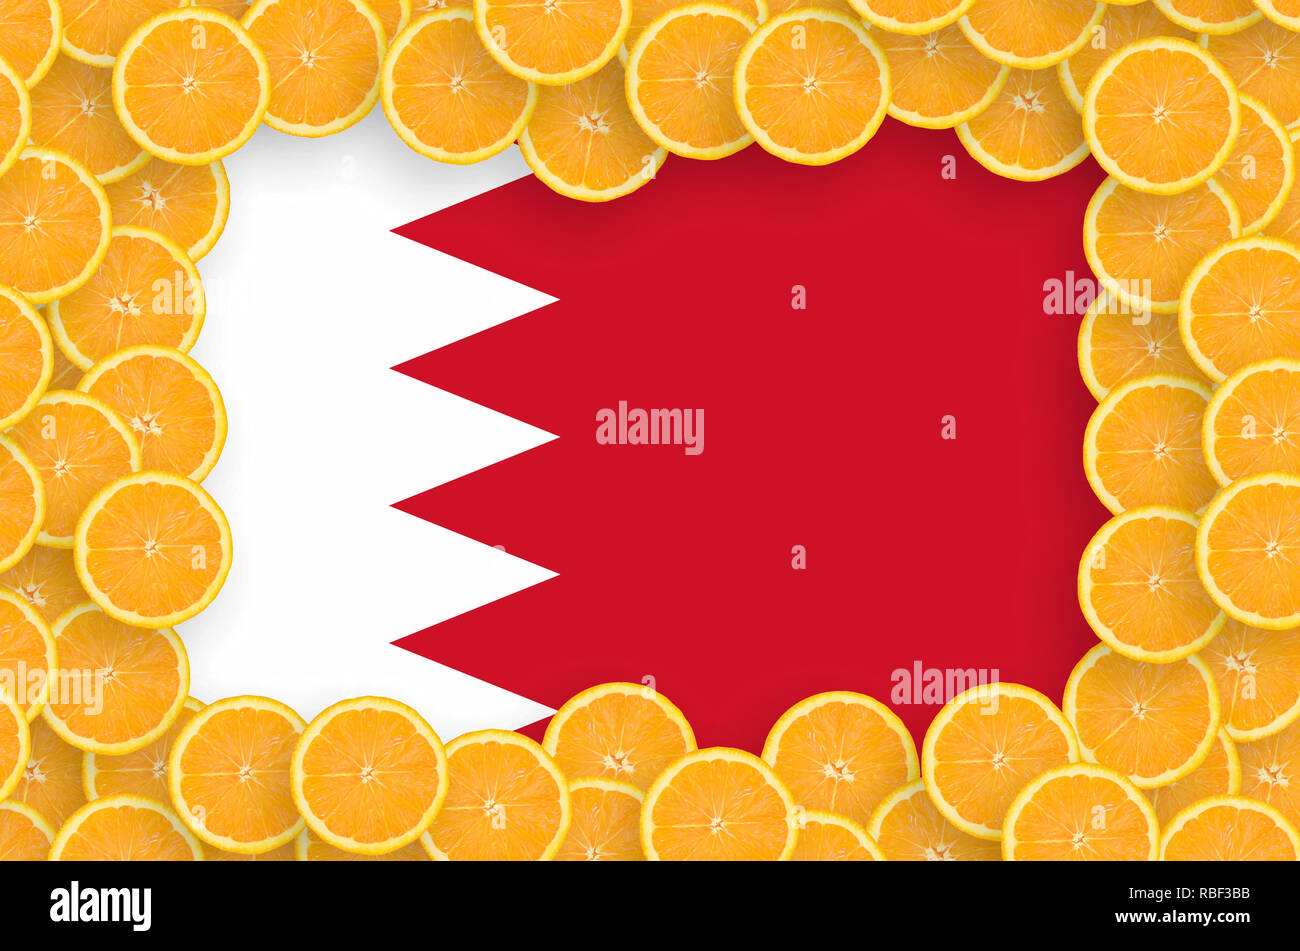 Drapeau de Bahreïn dans le cadre de tranches d'agrumes orange. Concept de croissance et de l'importation et l'exportation des agrumes Banque D'Images